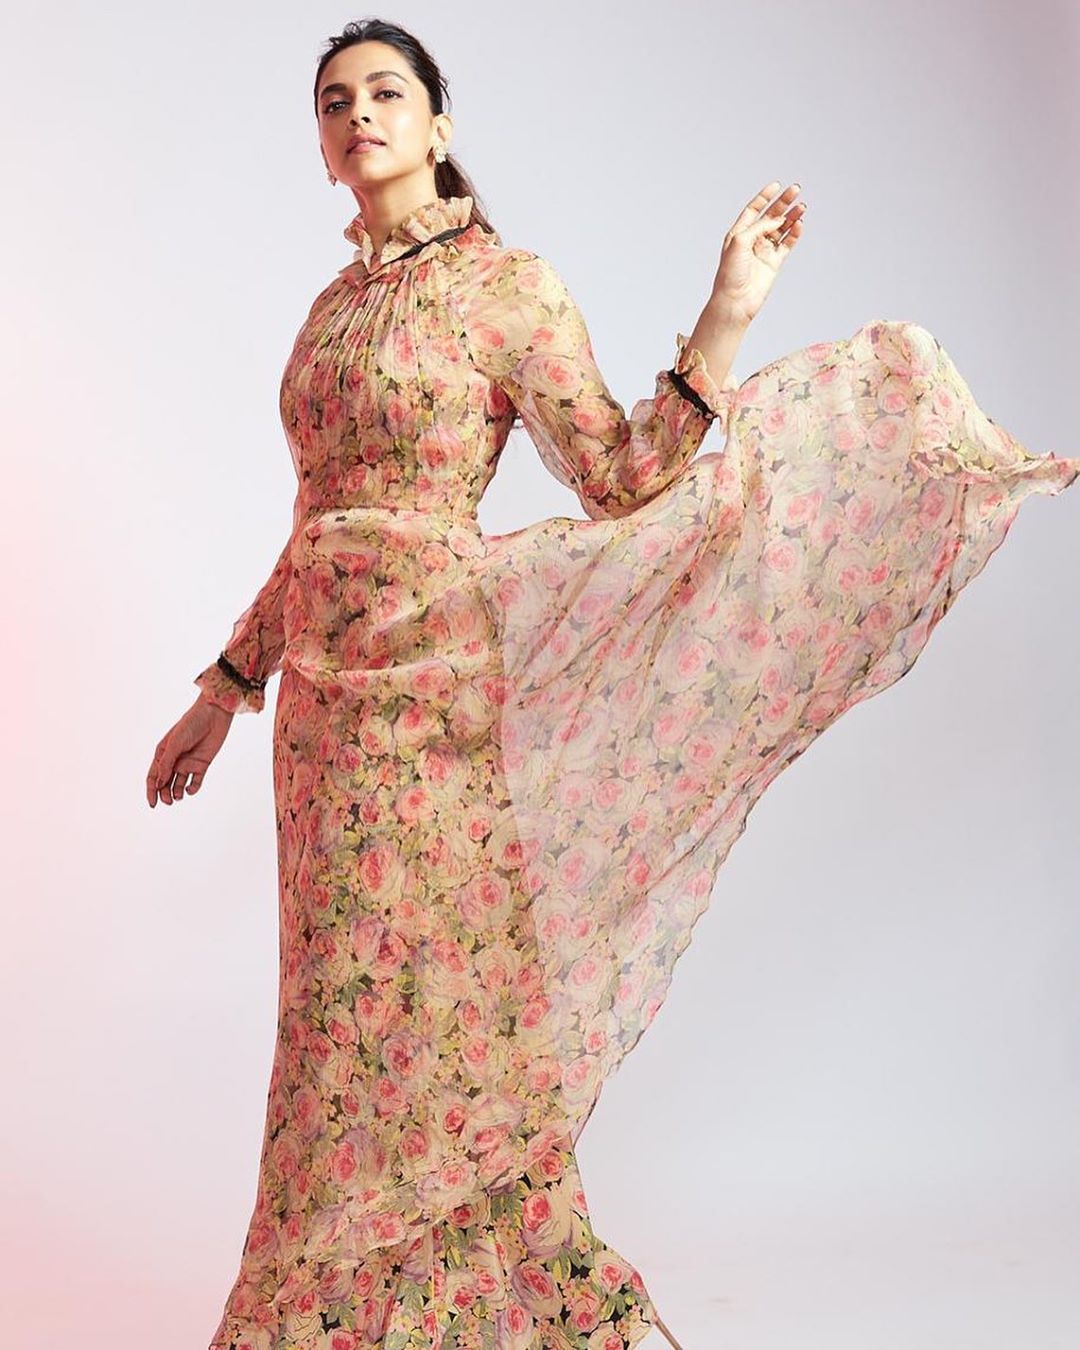 Deepika Padukone in Floral Printed Maxi Dress